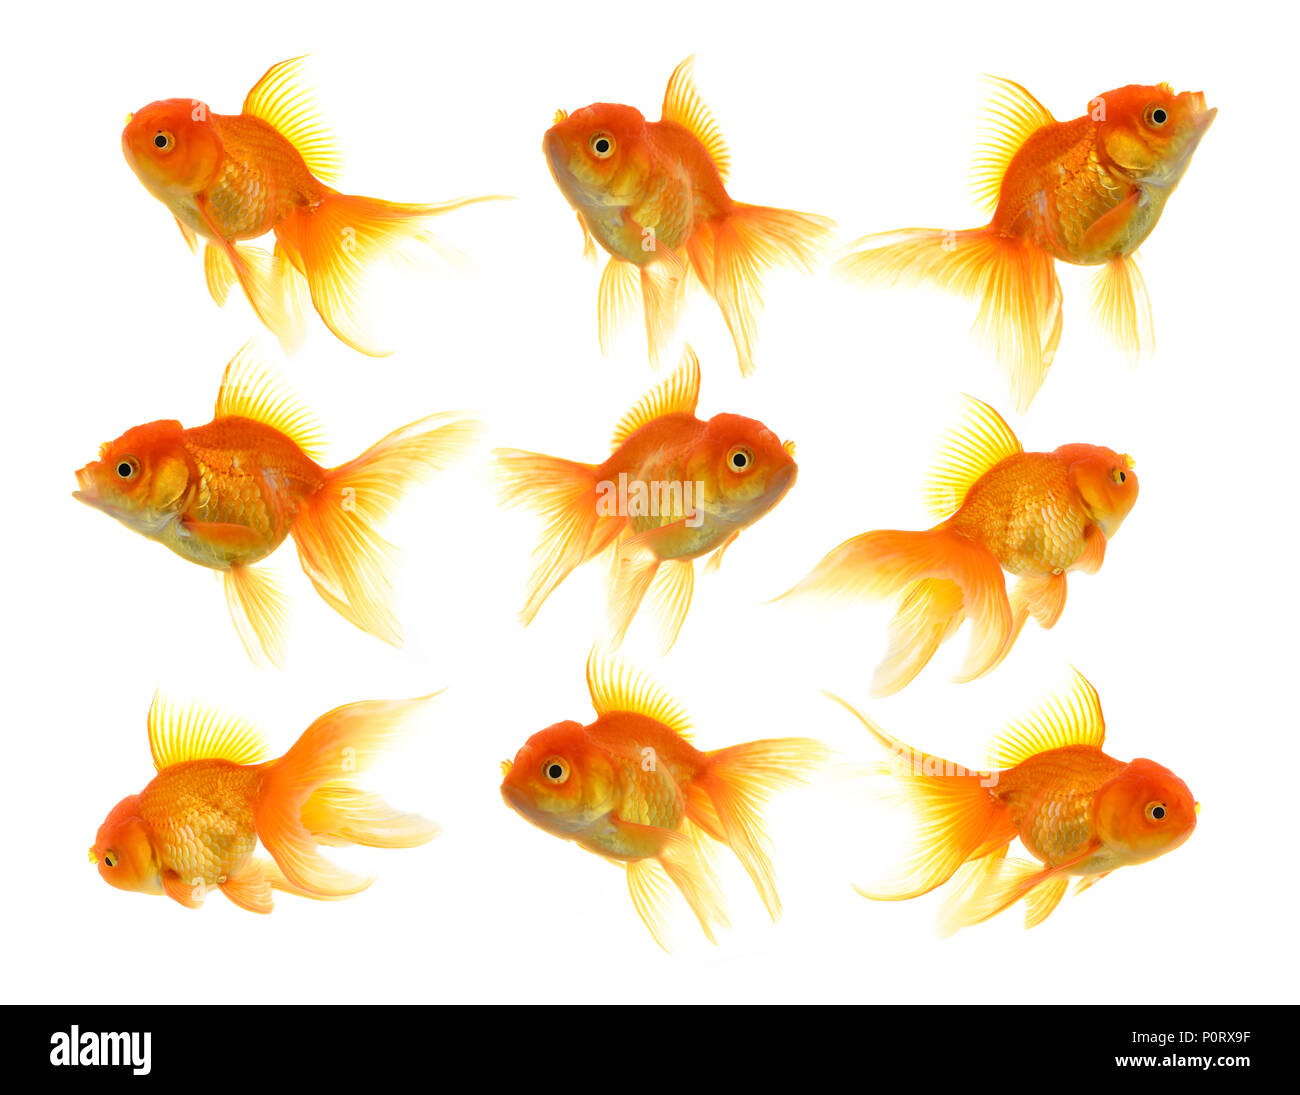 Goldfish on White Background Stock Photo